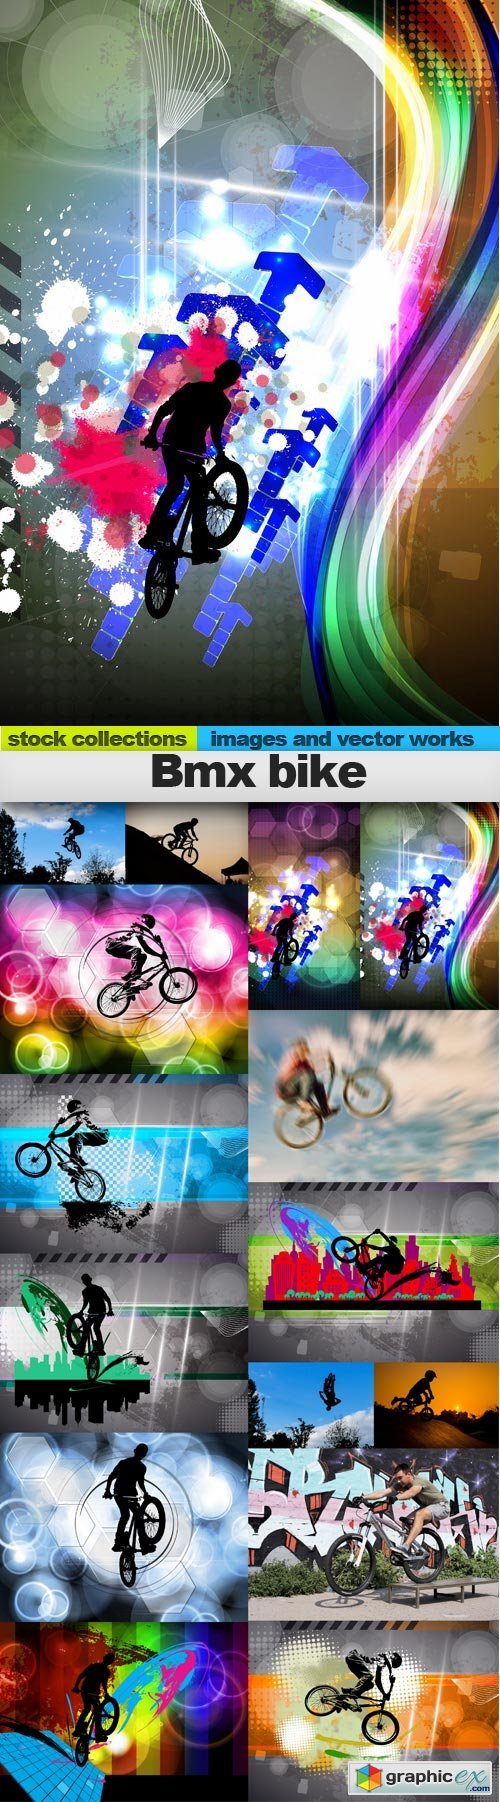 Bmx bike,15 x UHQ JPEG